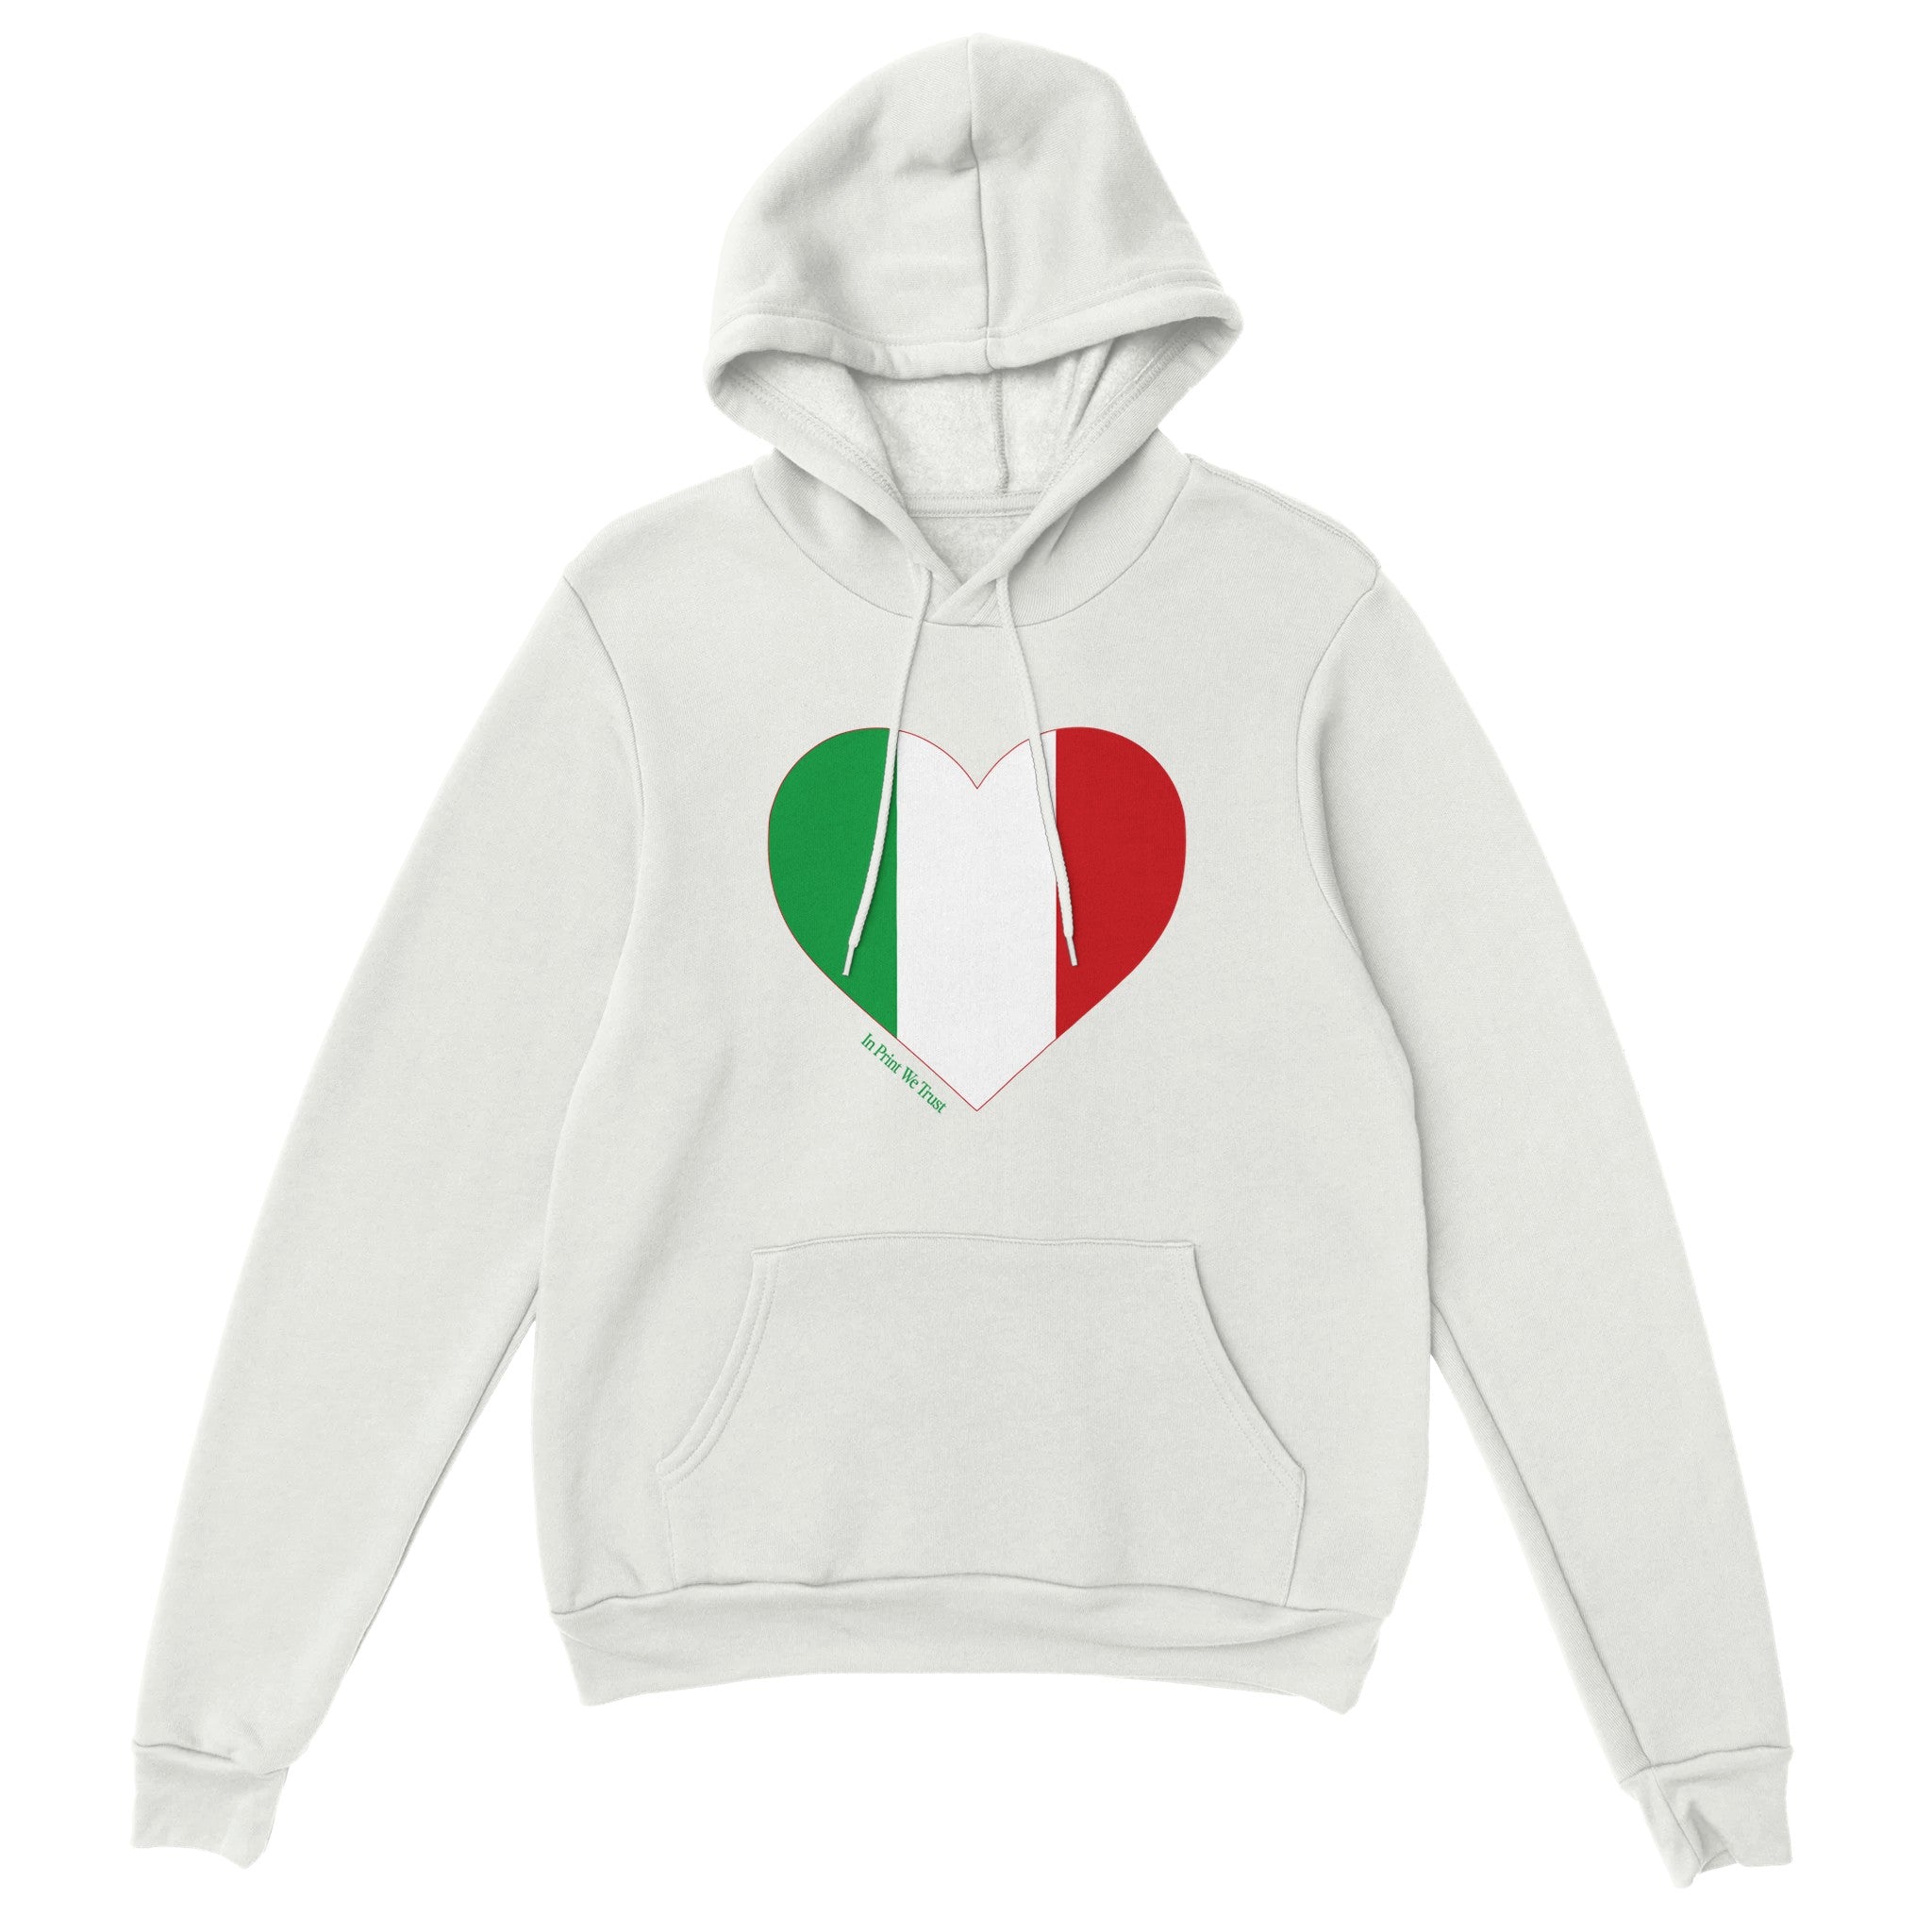 'Italy' hoodie - In Print We Trust